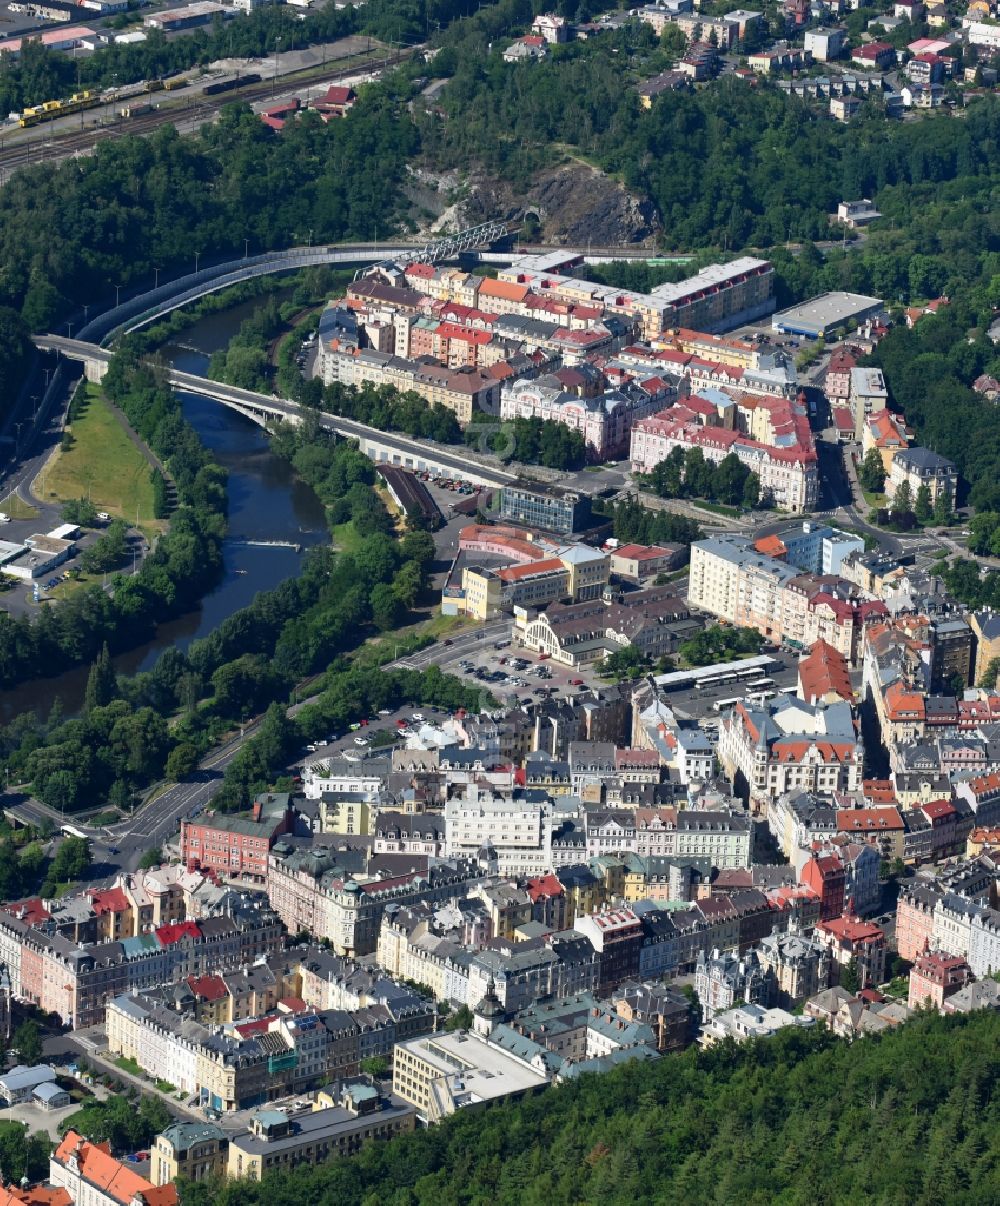 Karlovy Vary - Karlsbad von oben - Ortskern am Uferbereich des Eger - Flußverlaufes in Karlovy Vary - Karlsbad in Cechy - Böhmen, Tschechien